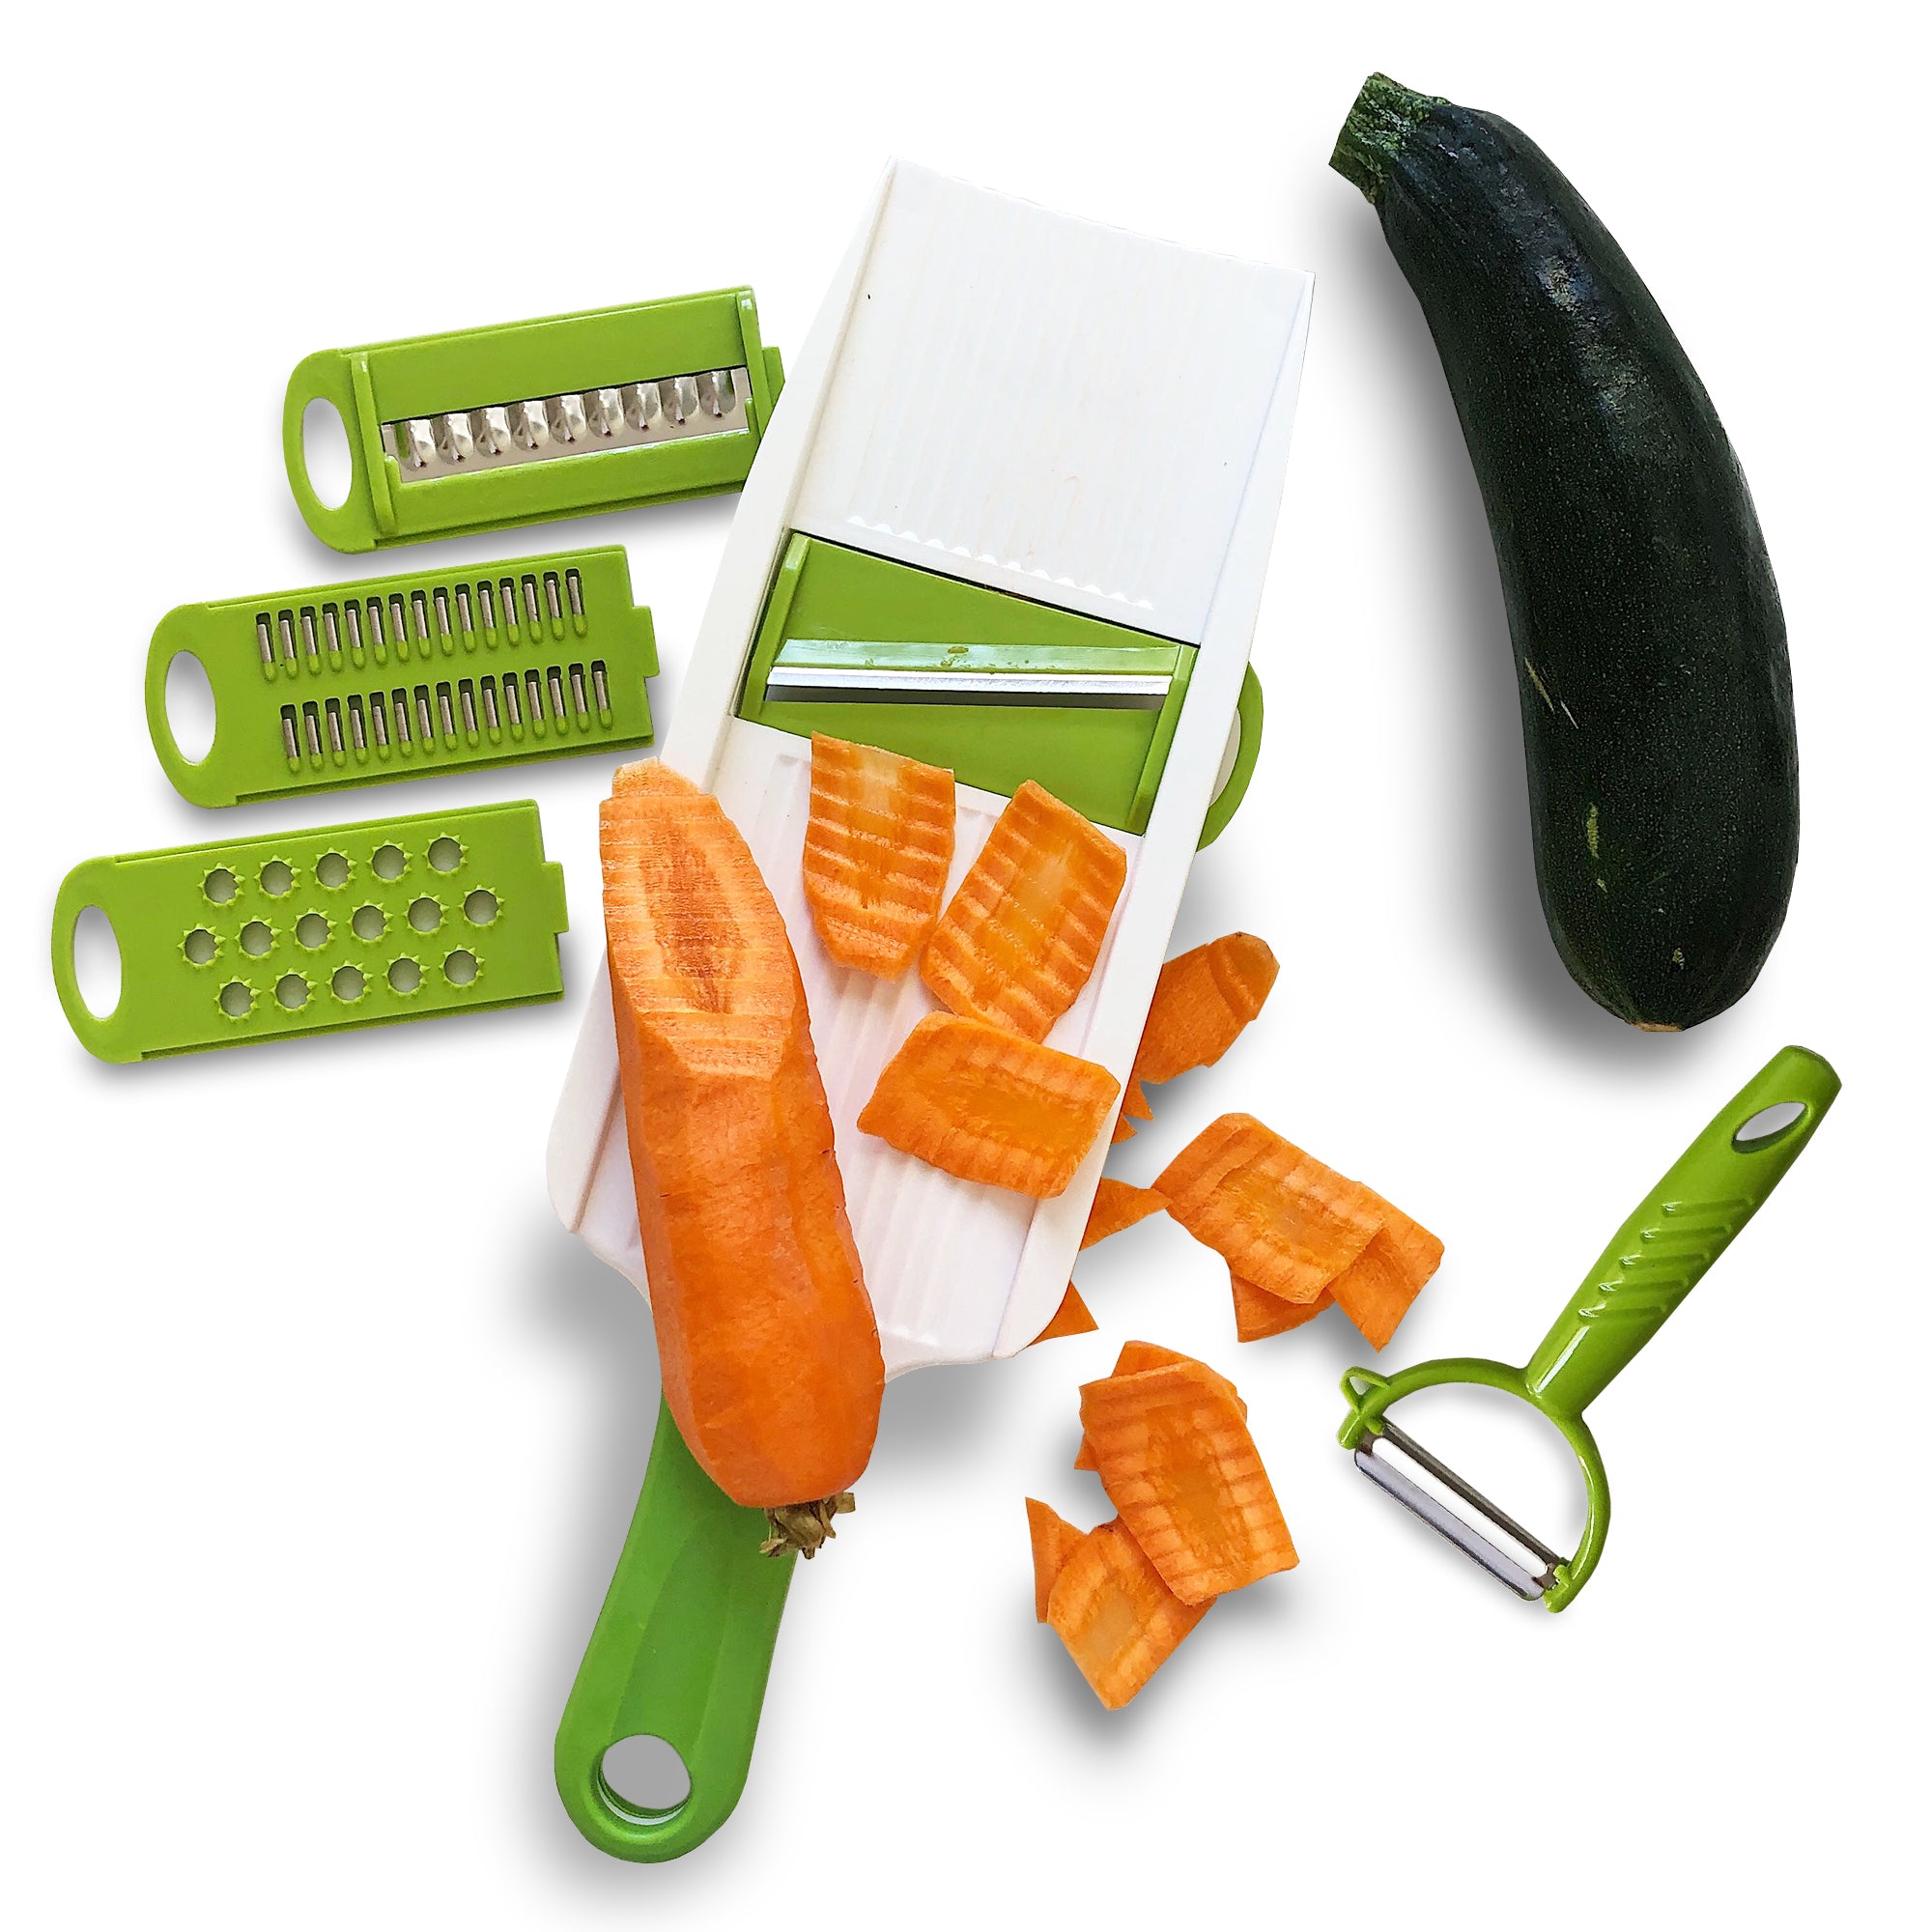 Jean-Patrique Handheld Multi 5 in 1 Vegetable Slicer